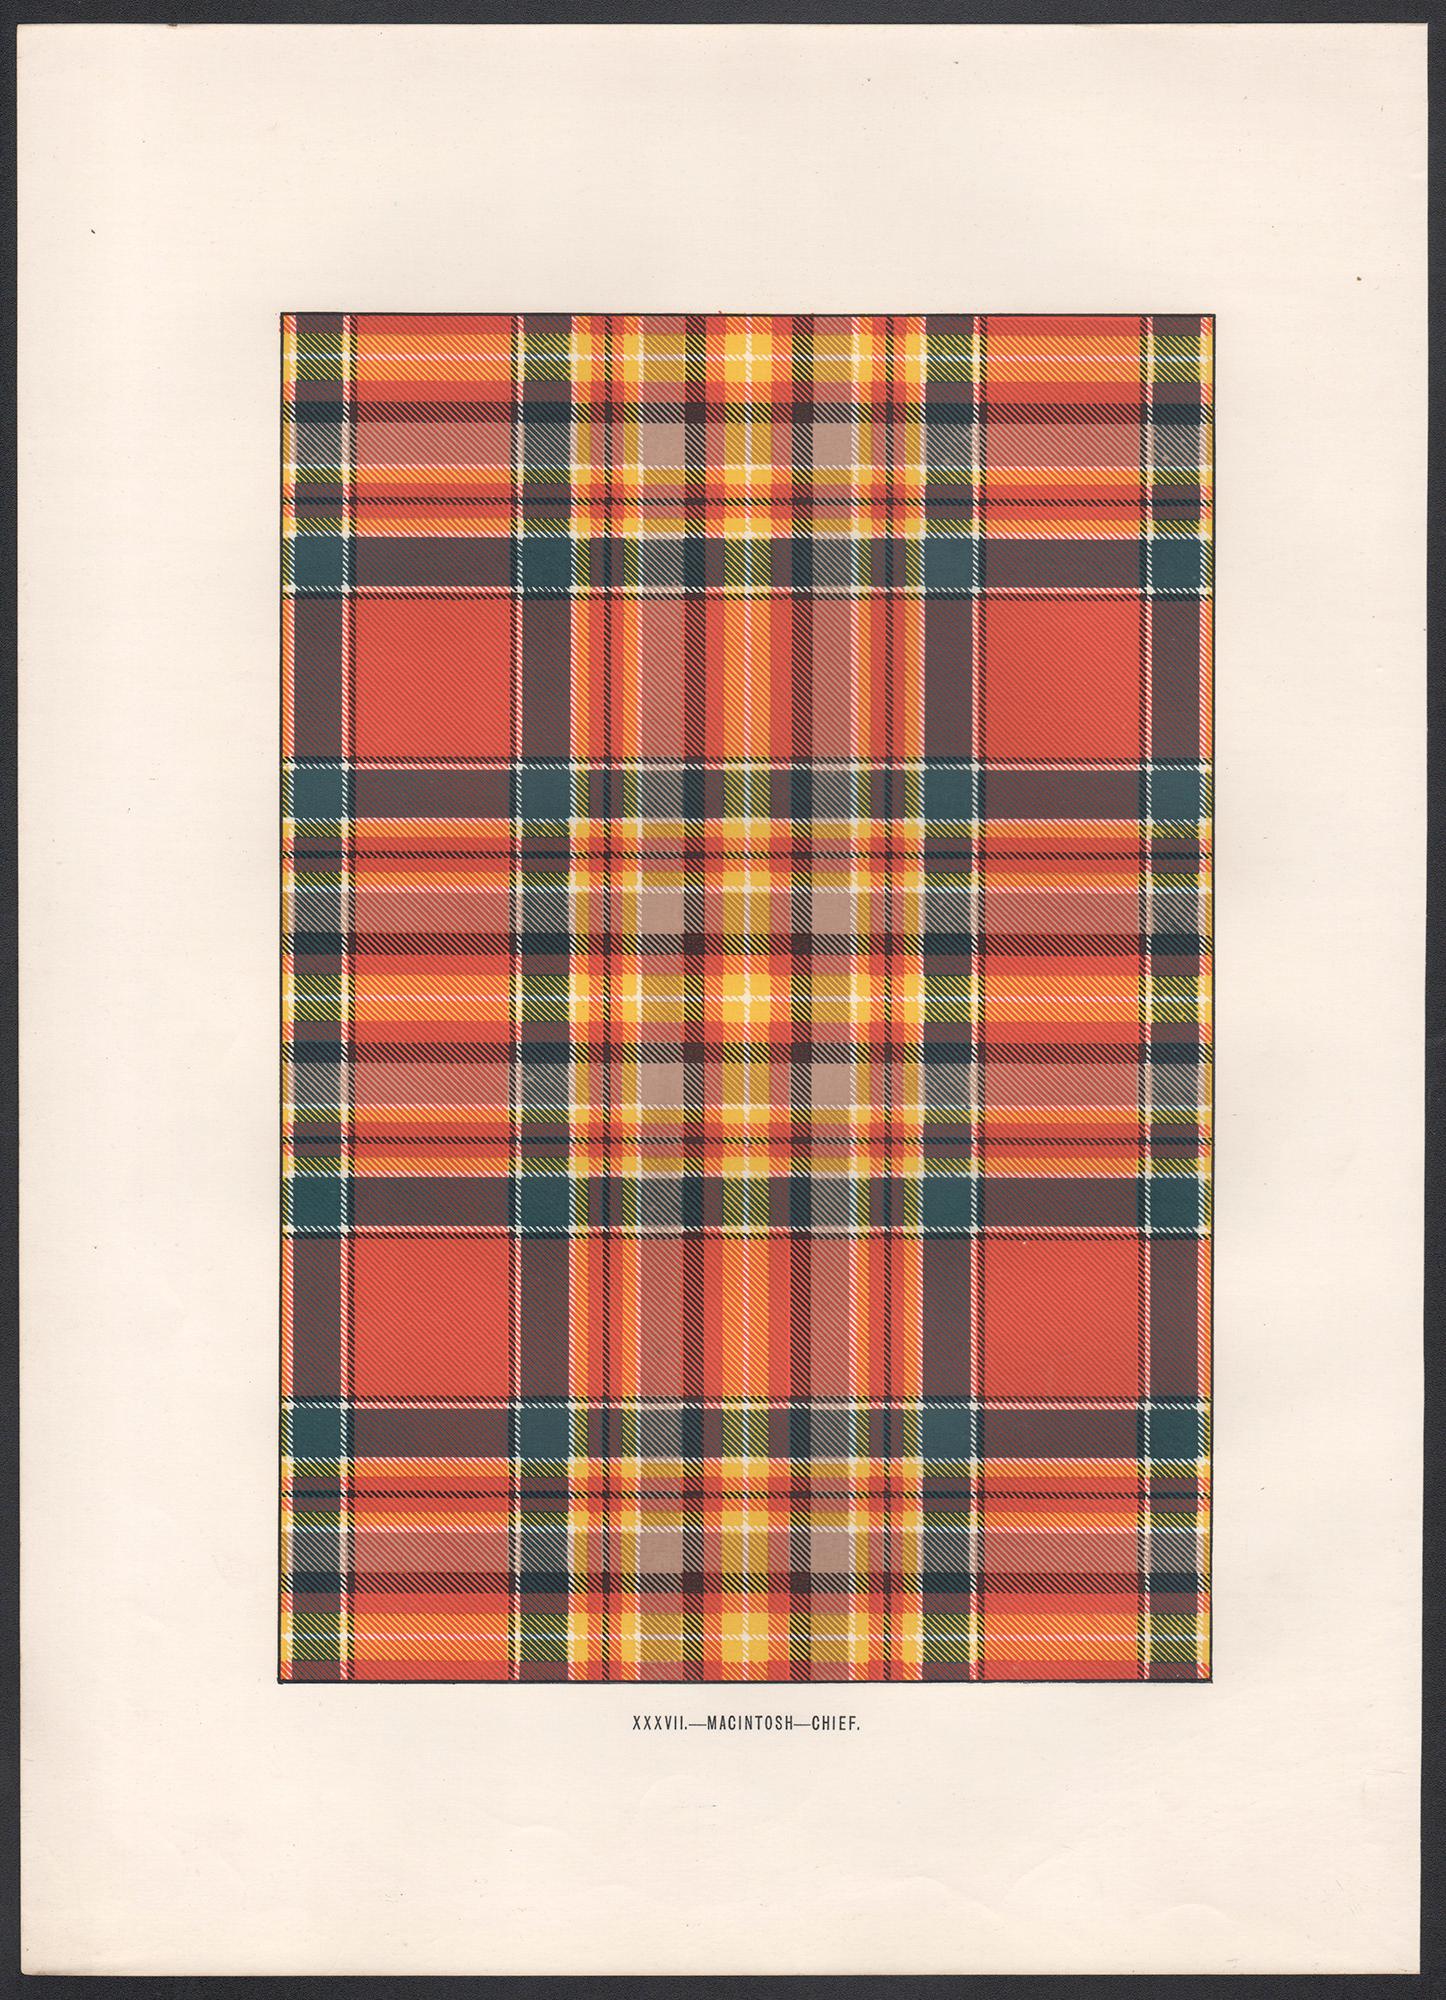 Lithographie de MacIntosh - Chief (tartan), Écosse écossaise de conception artistique - Print de Unknown